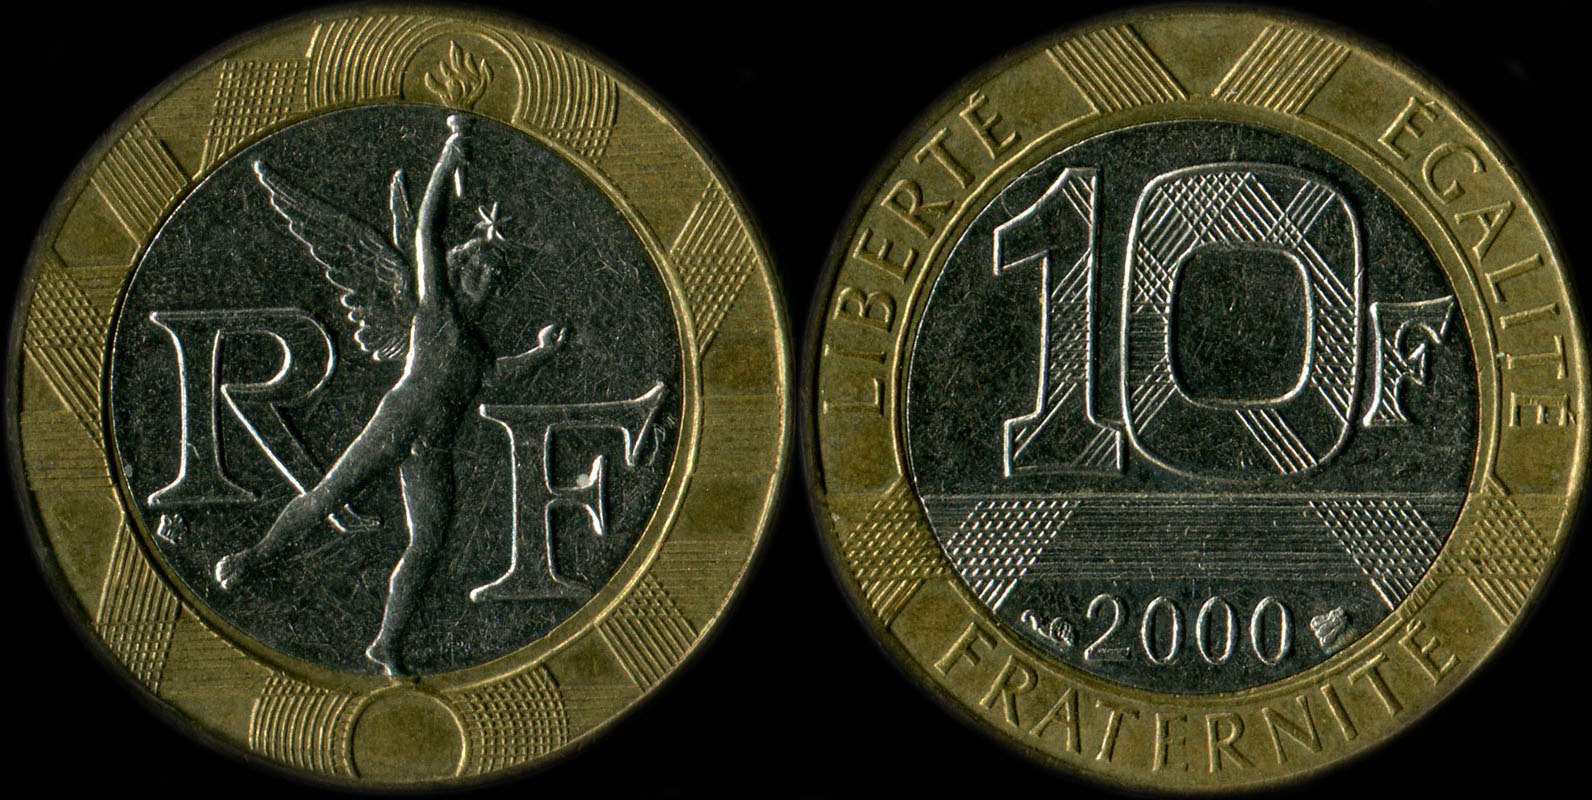 Pice de 10 francs Gnie 2000 diffrent de Pessac ne touche pas le cercle